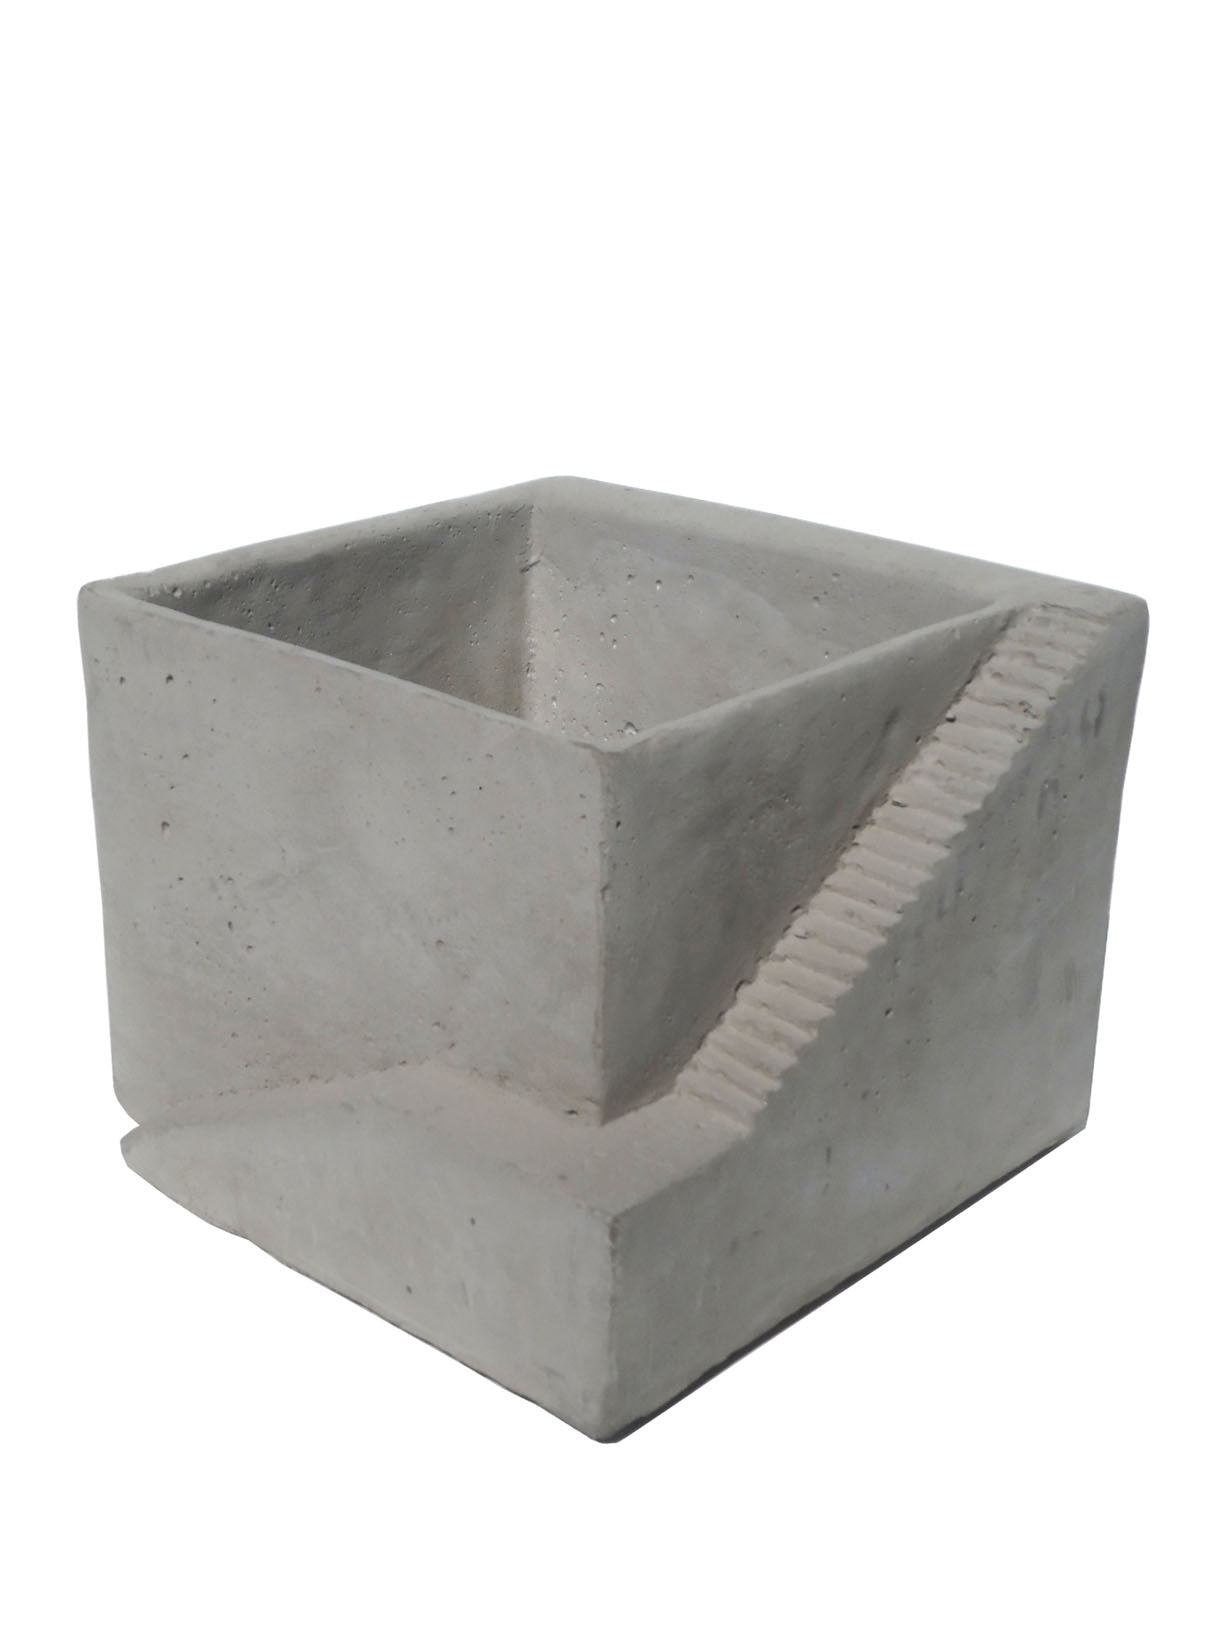 Concrete Architectural Planter Or Organizer 2